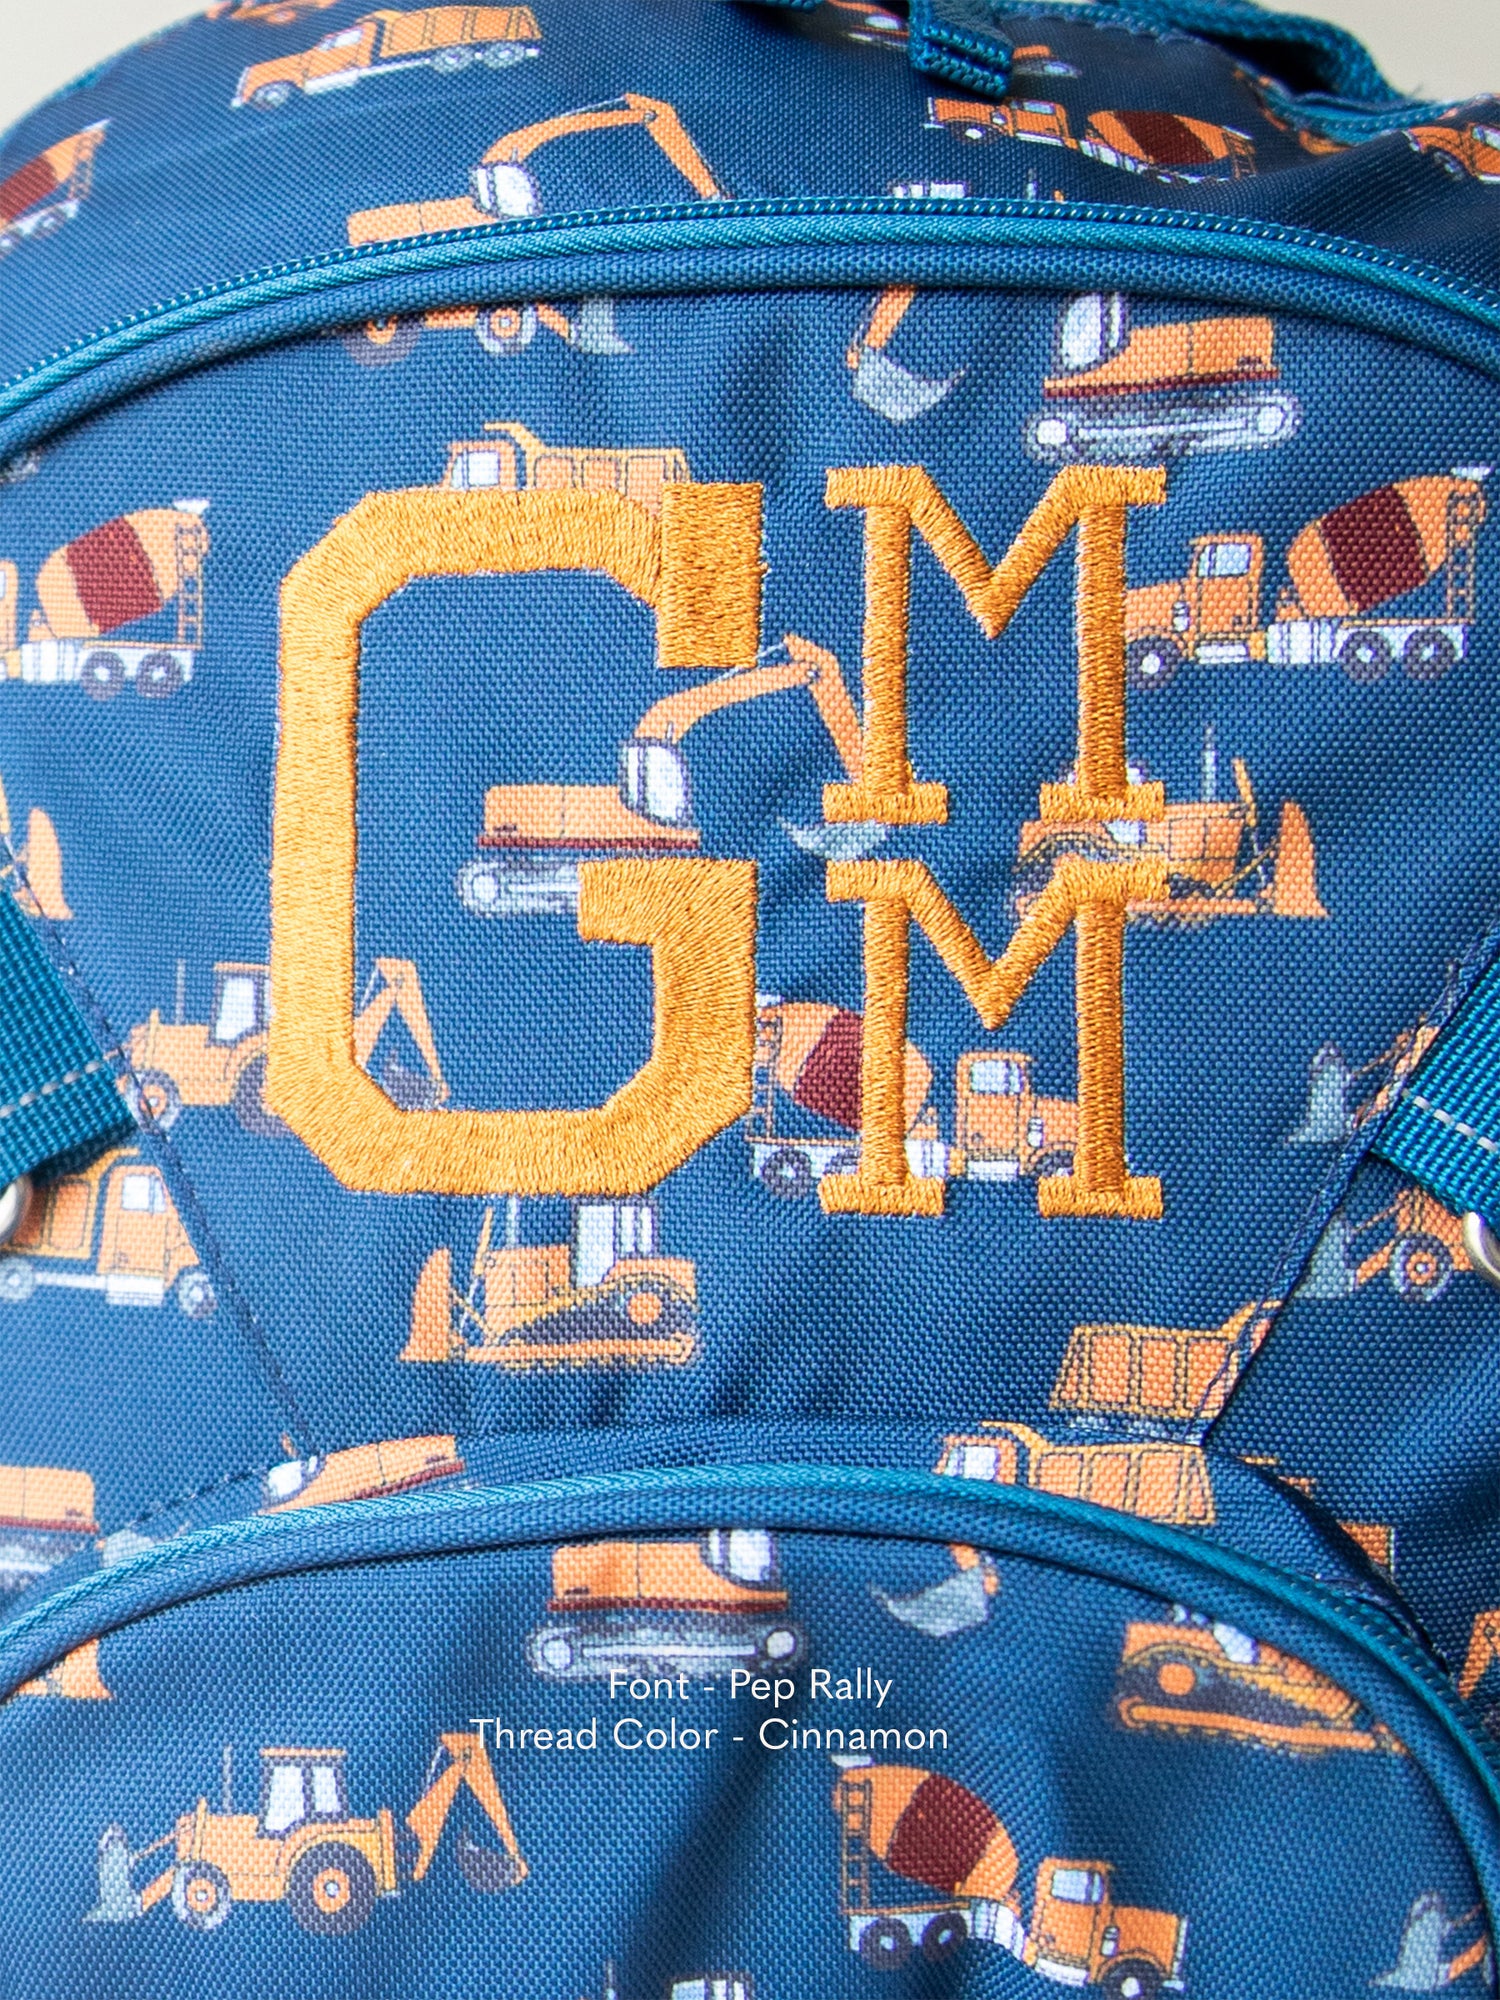 M&M's Backpacks